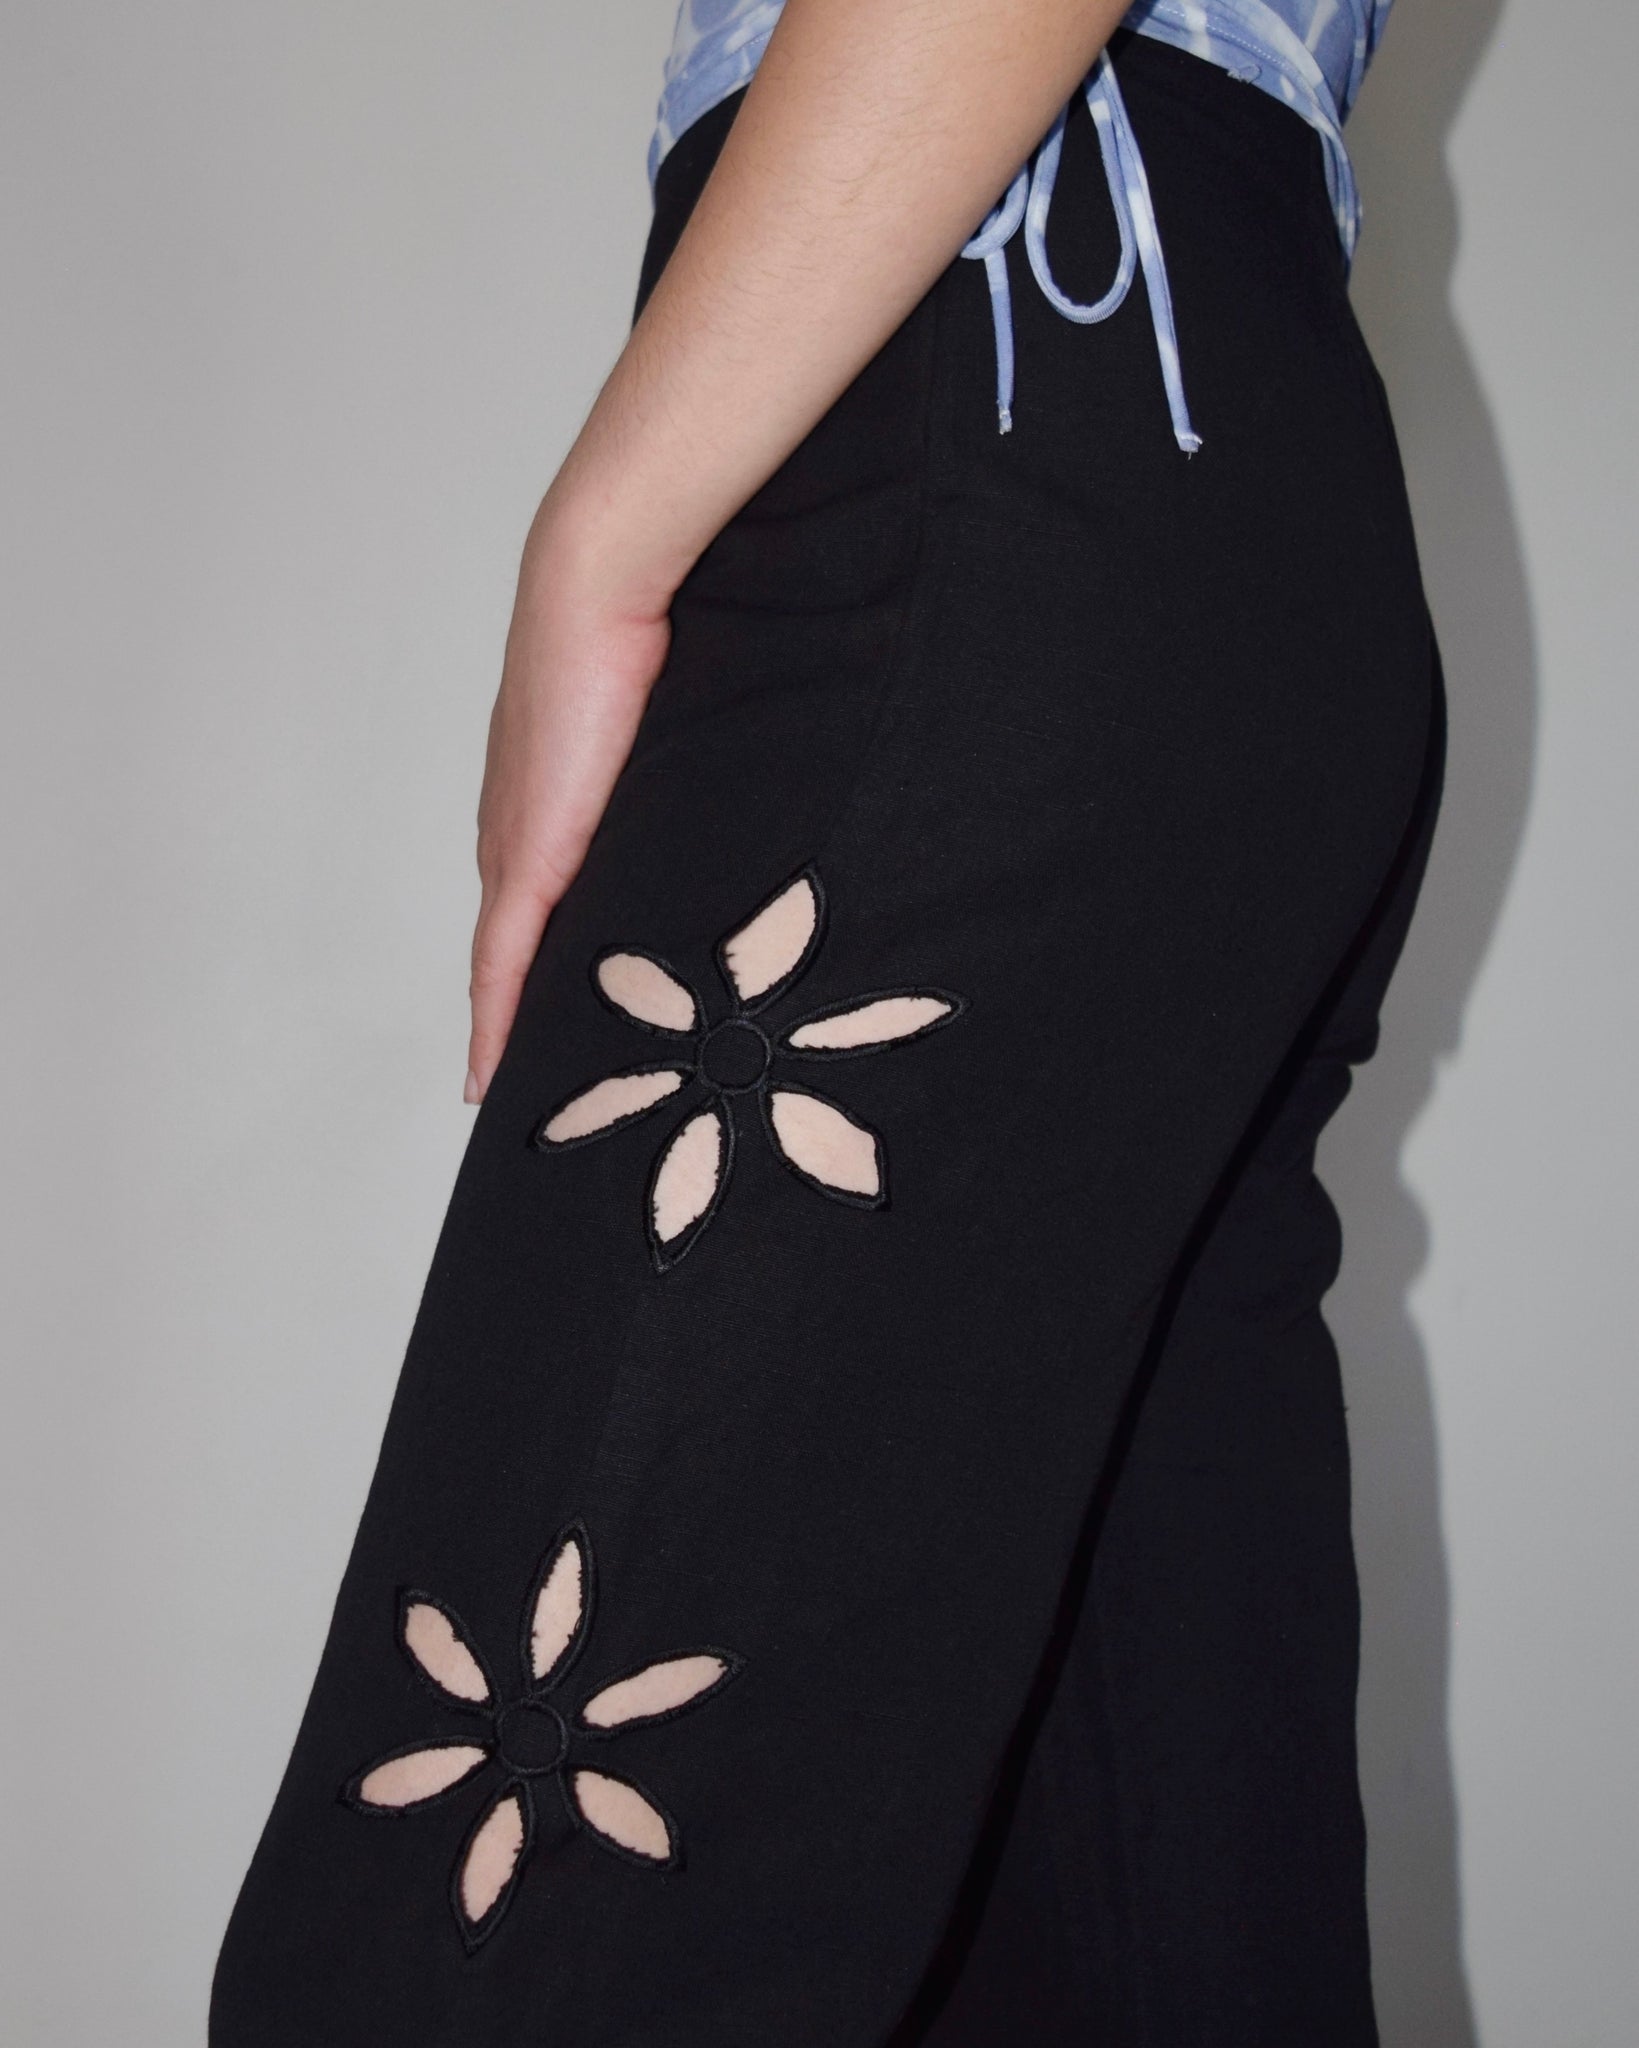 Tach Floral Cutout Pant in Black Linen